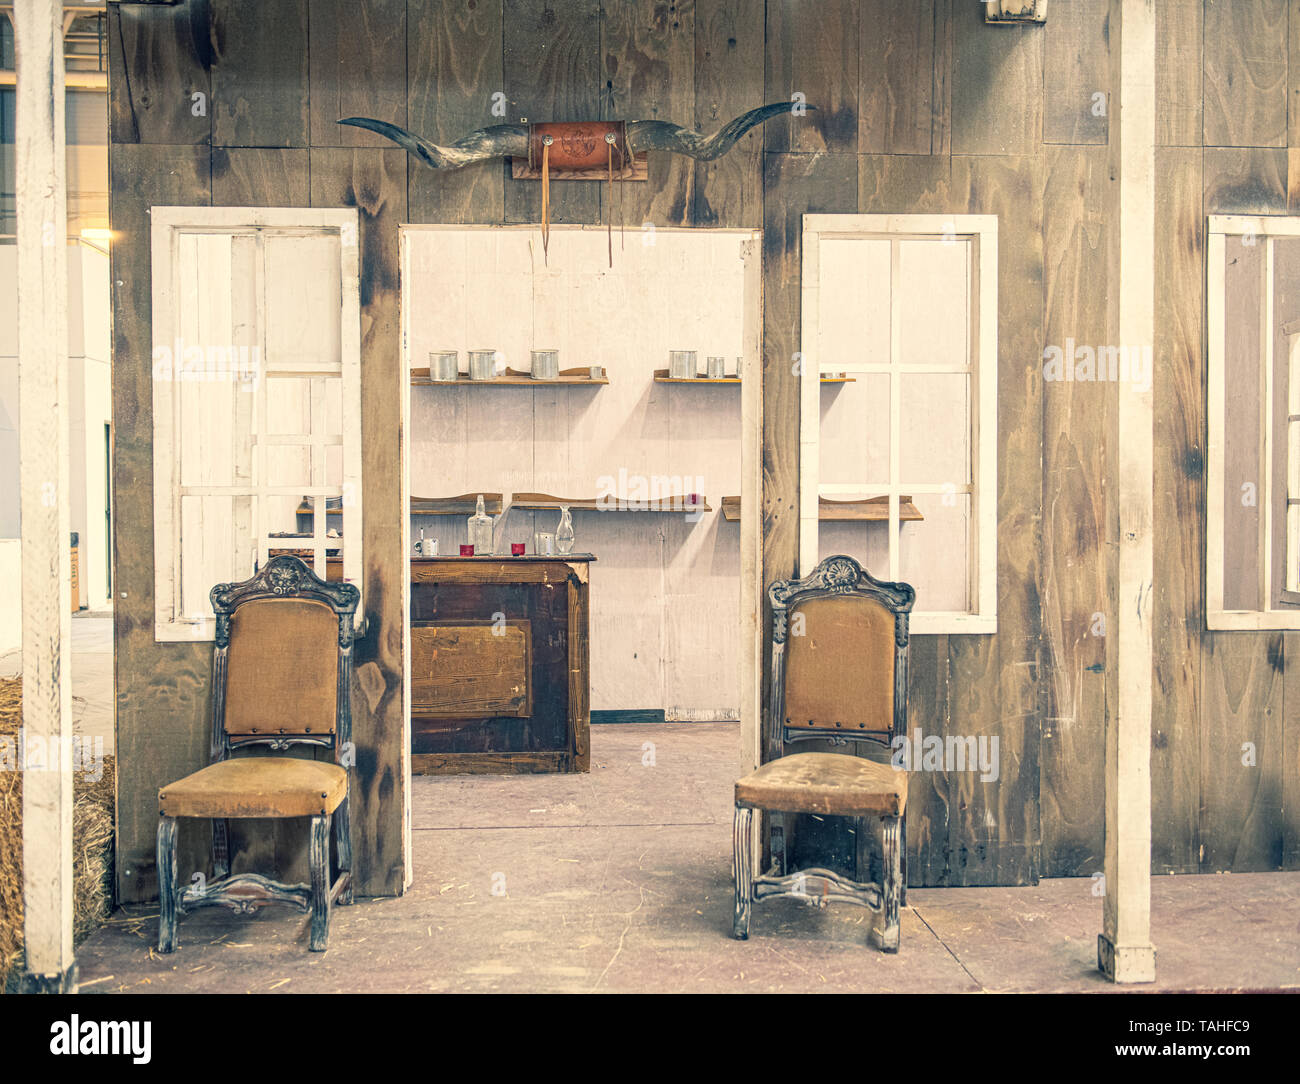 Lunghezza piena vista frontale del saloon con sedie, bancone bar bottiglie e contenitori di vetro senza persone old wild west concept Foto Stock